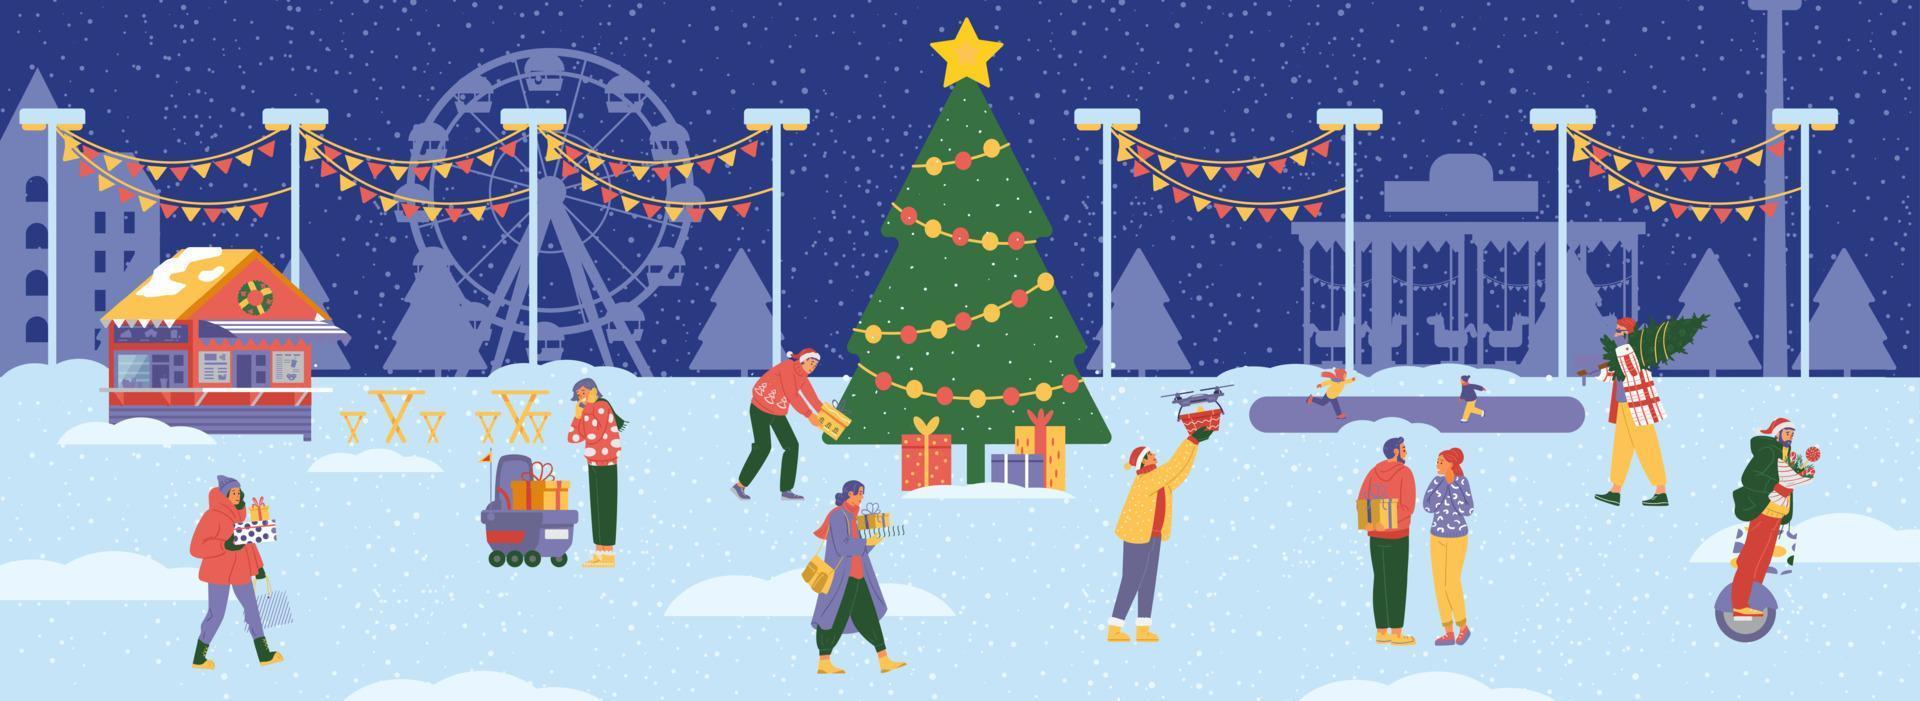 scena del parco divertimenti invernale con grande albero di natale e persone intorno con scatole regalo. banner orizzontale vettoriale piatto.